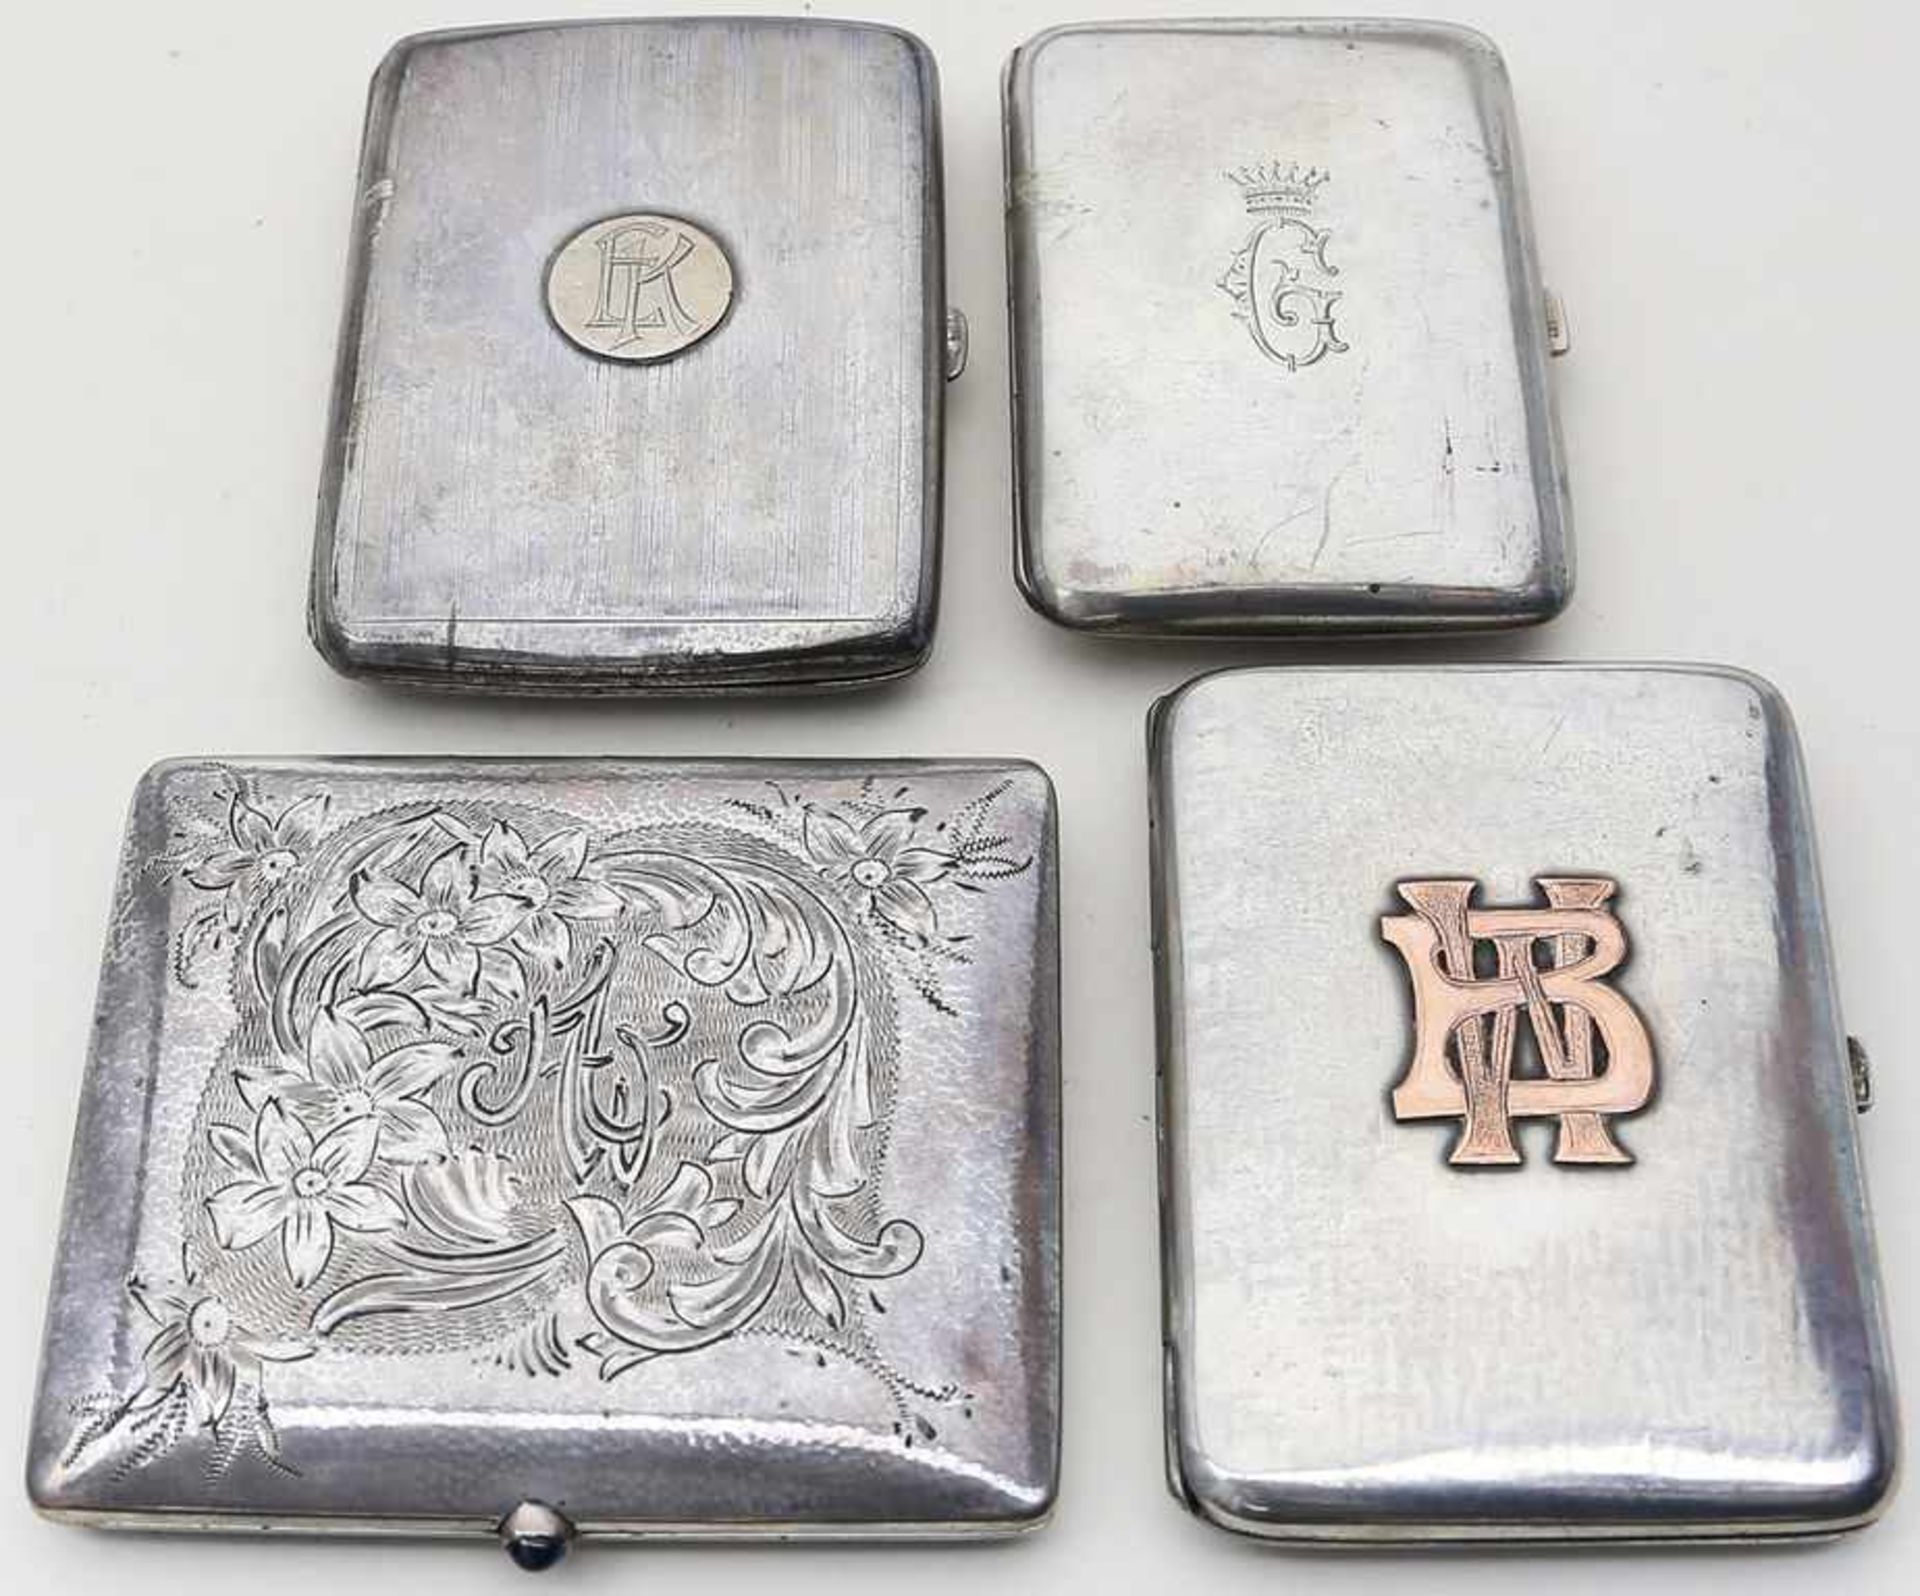 4 Zigarrettenetuis.Silber, ca. 330 g. Verschiedene Reliefdekore, einmal Drücker mit blauem